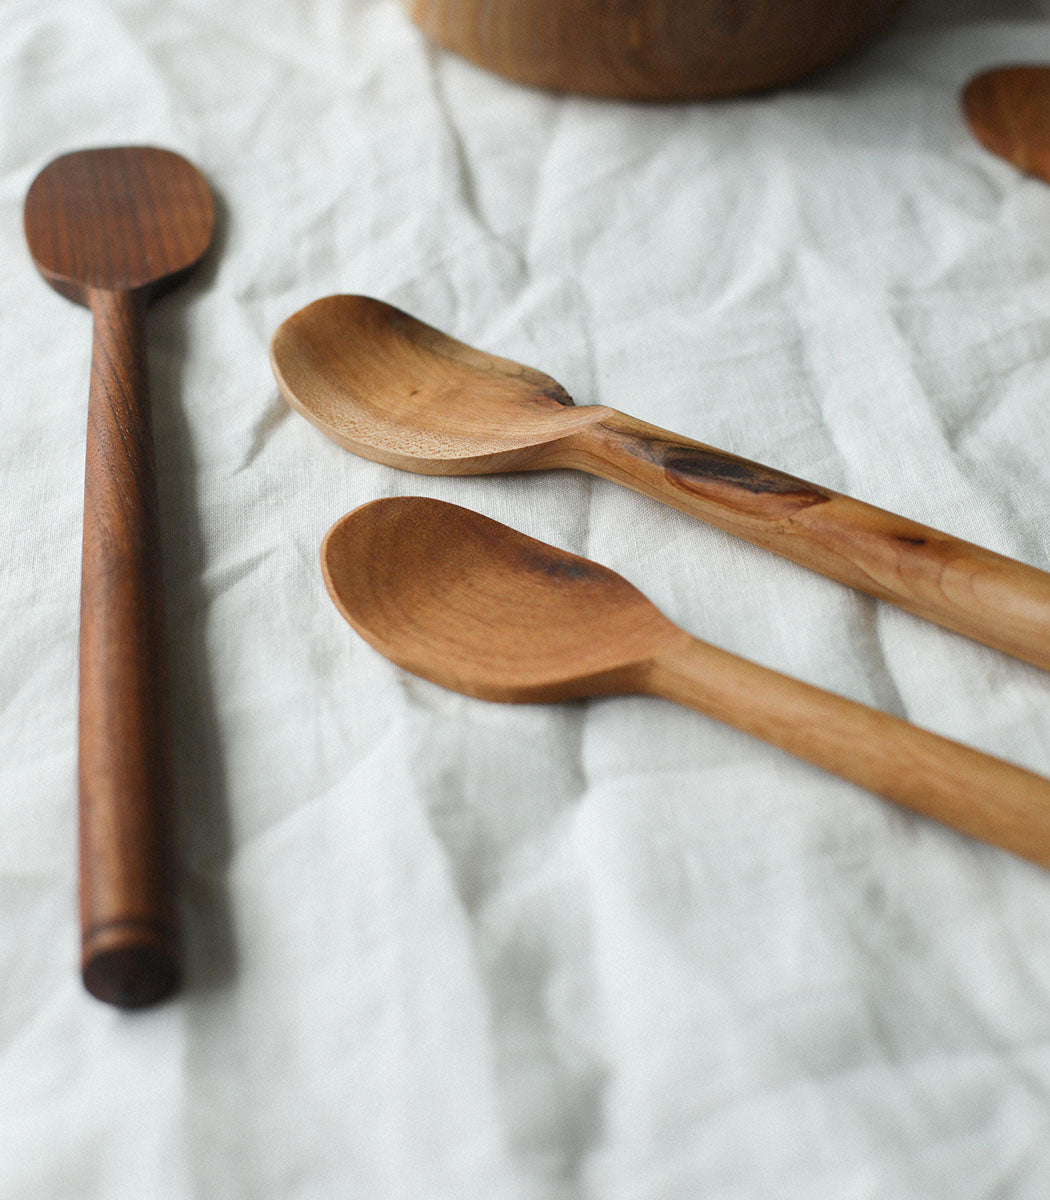 Handmade maple wood spoon